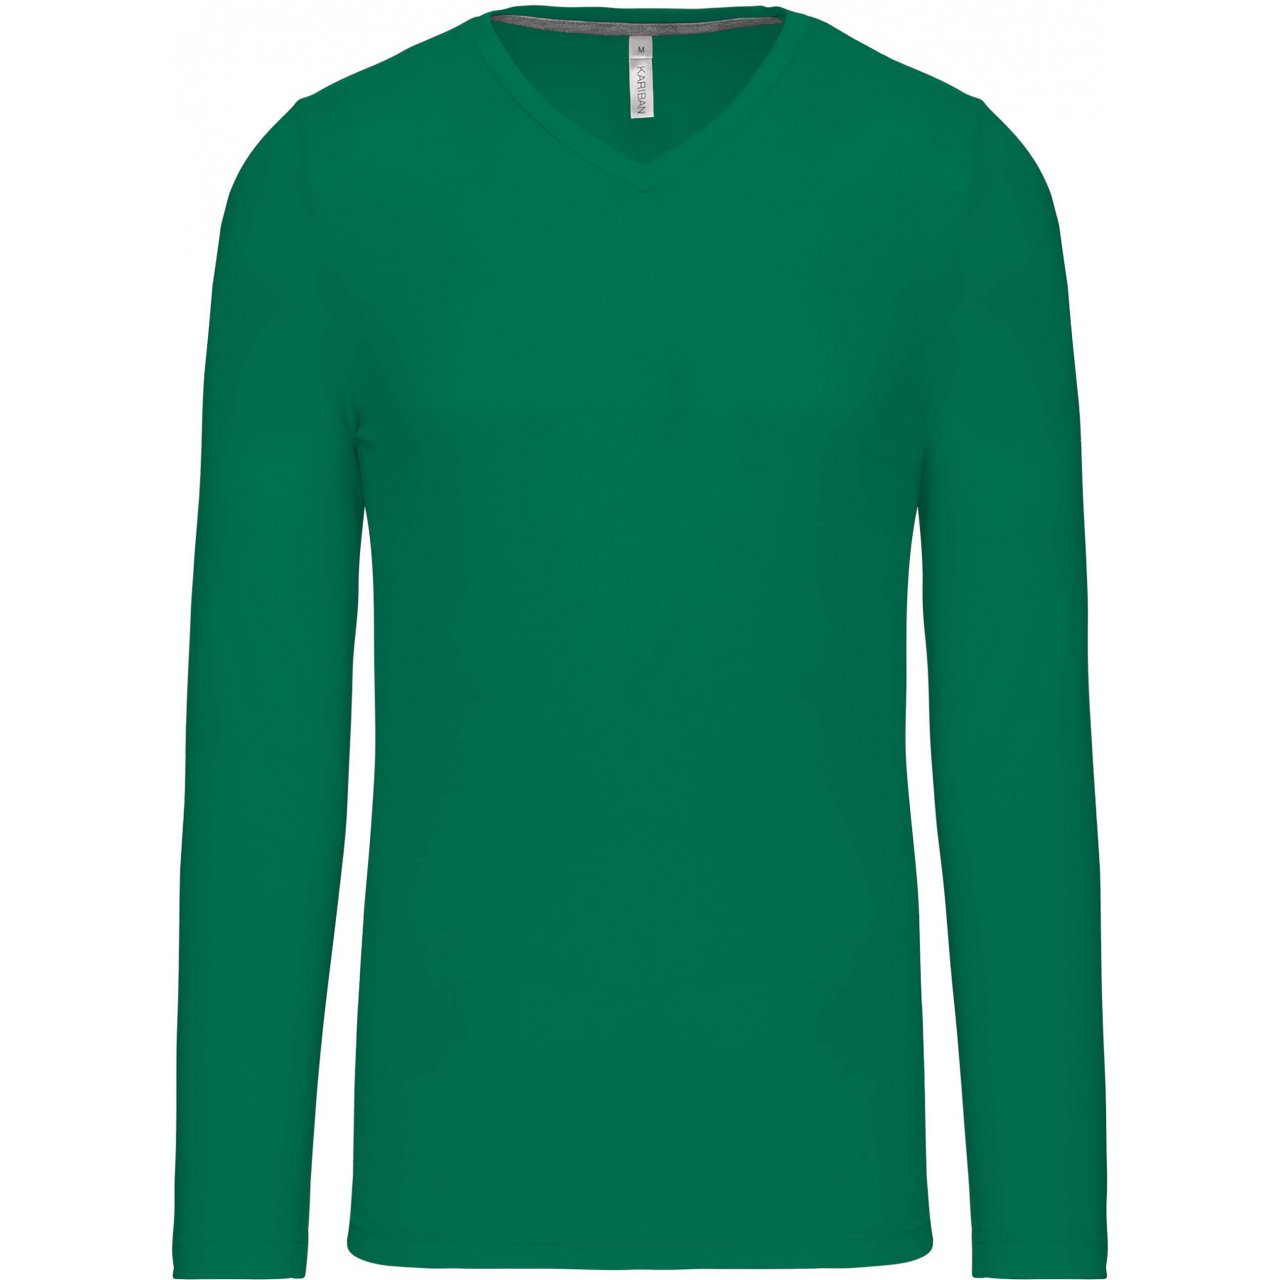 Pánské tričko Kariban dlouhý rukáv V-neck - zelené, XXL